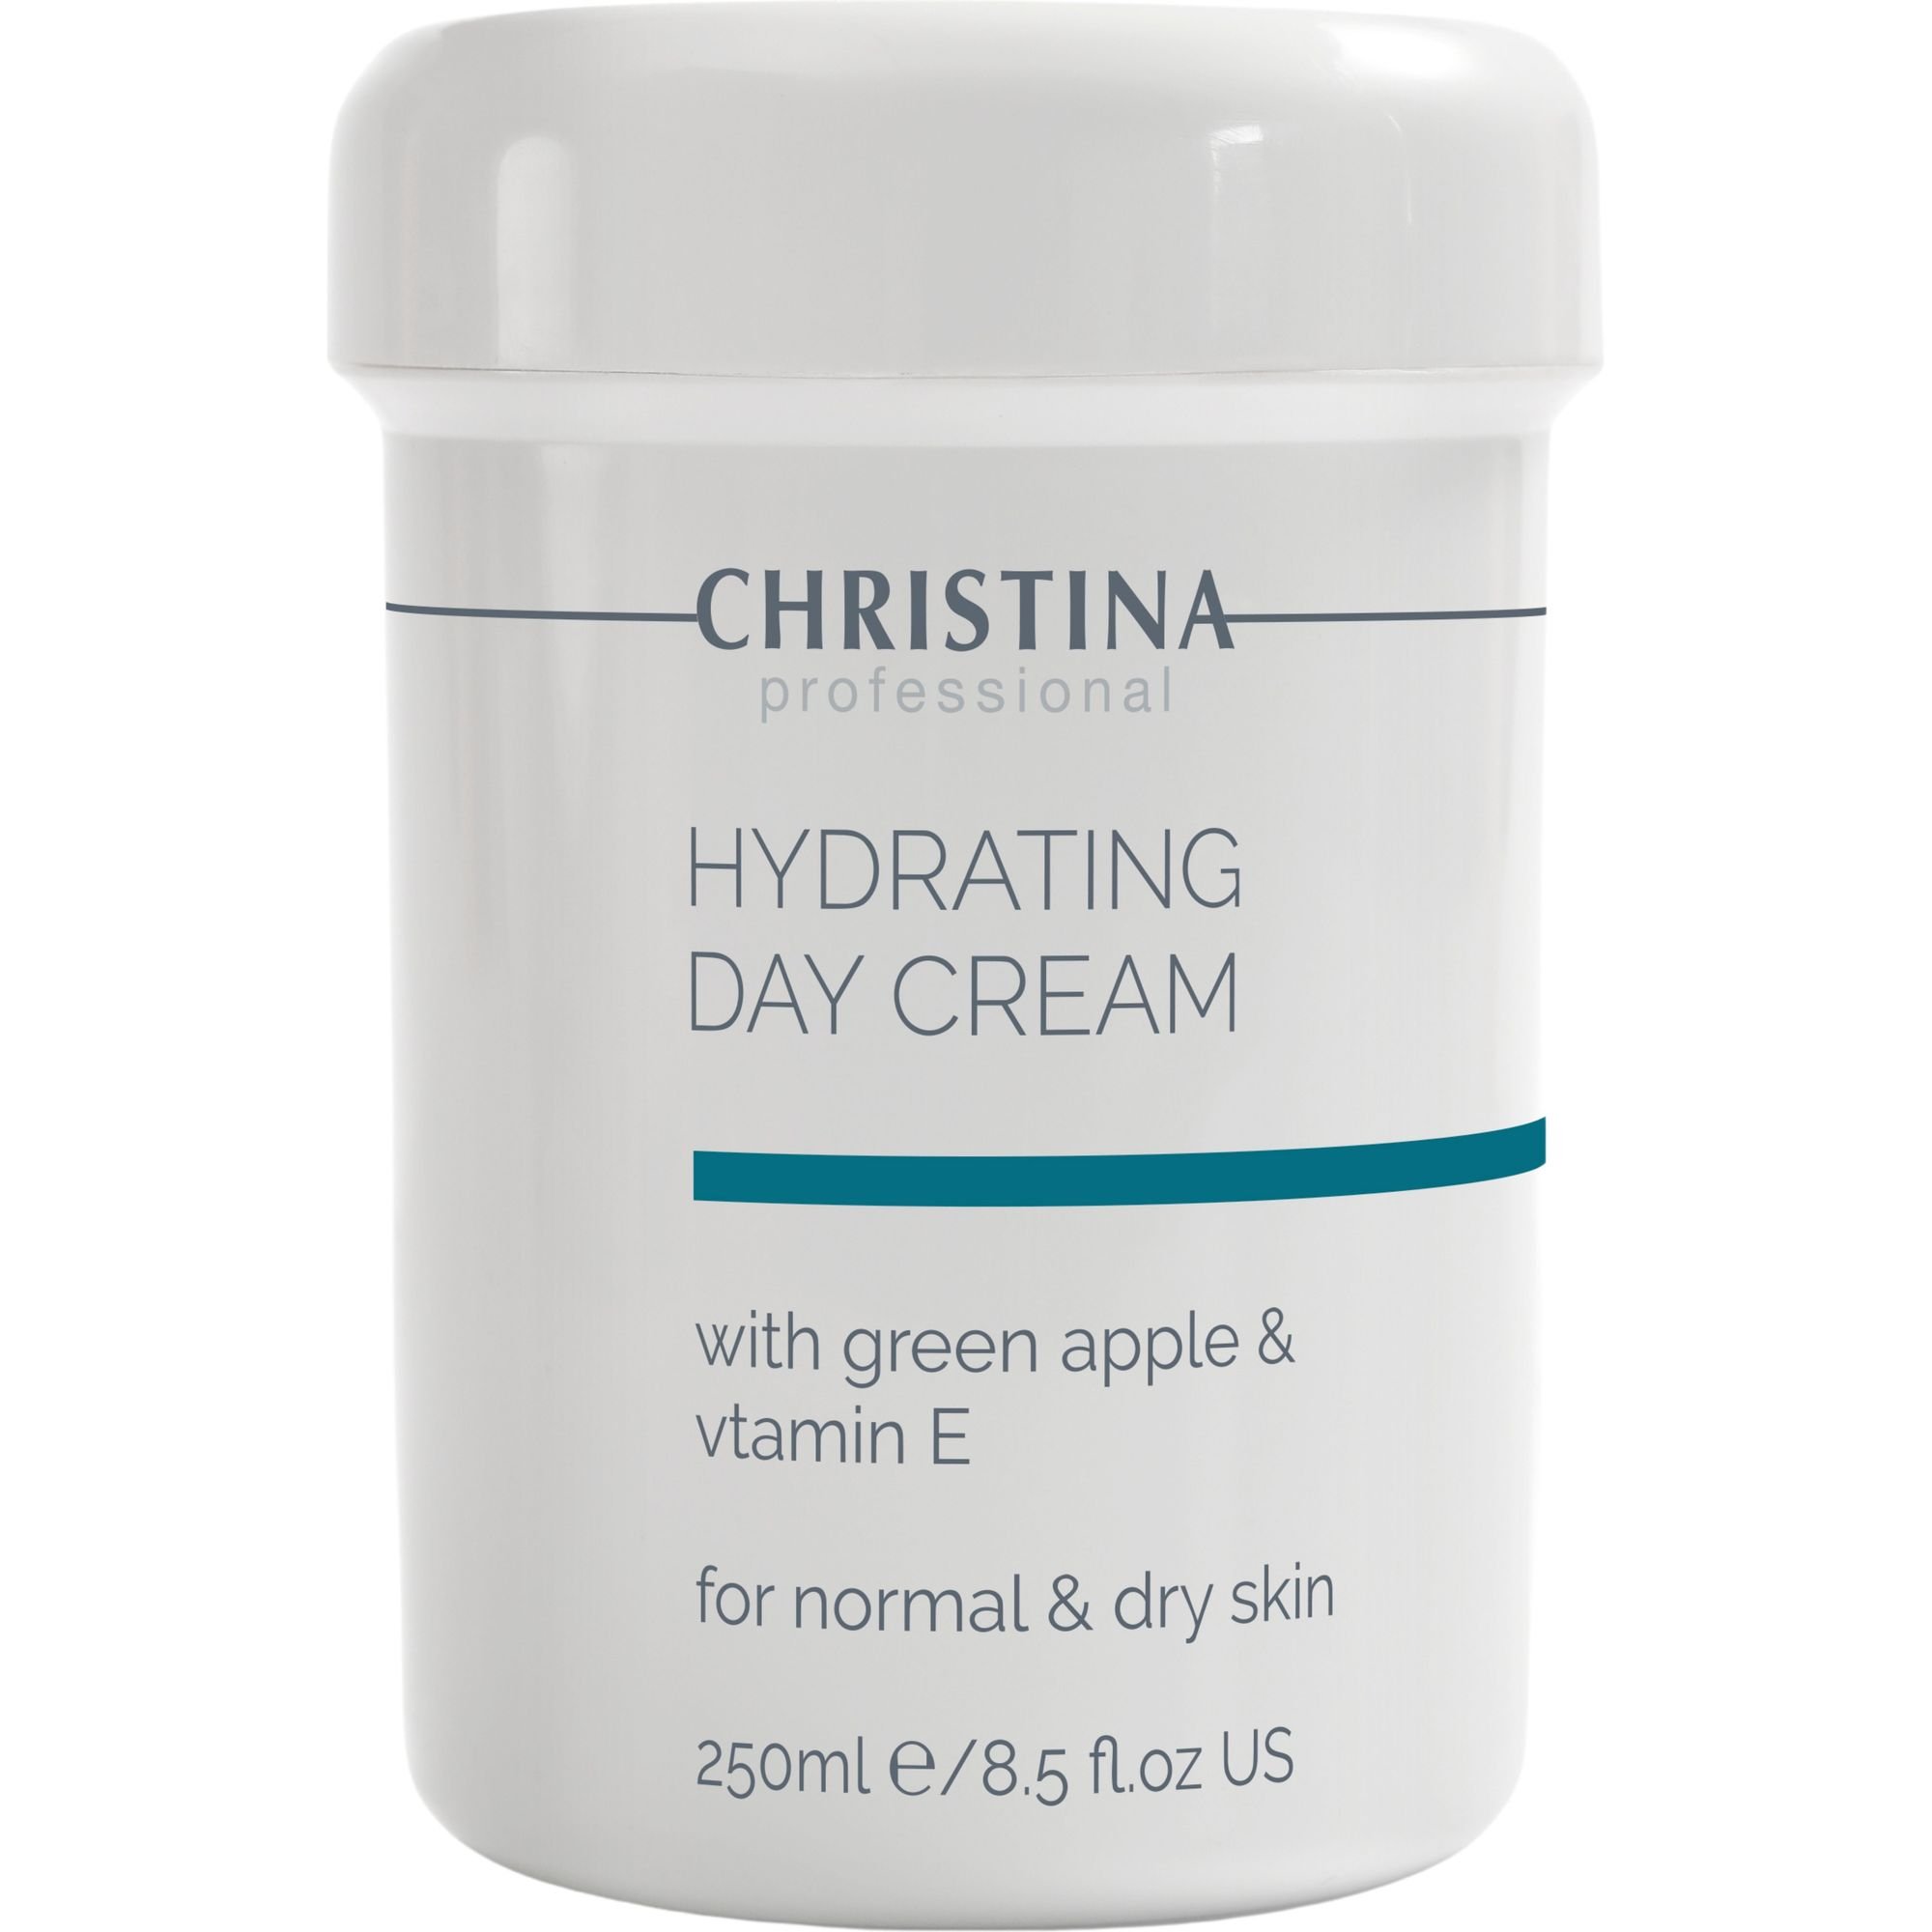 Увлажняющий крем для нормальной и сухой кожи Christina Hydrating Day Cream With Green Apple & Vitamin E с яблоком и витамином Е 250 мл - фото 1